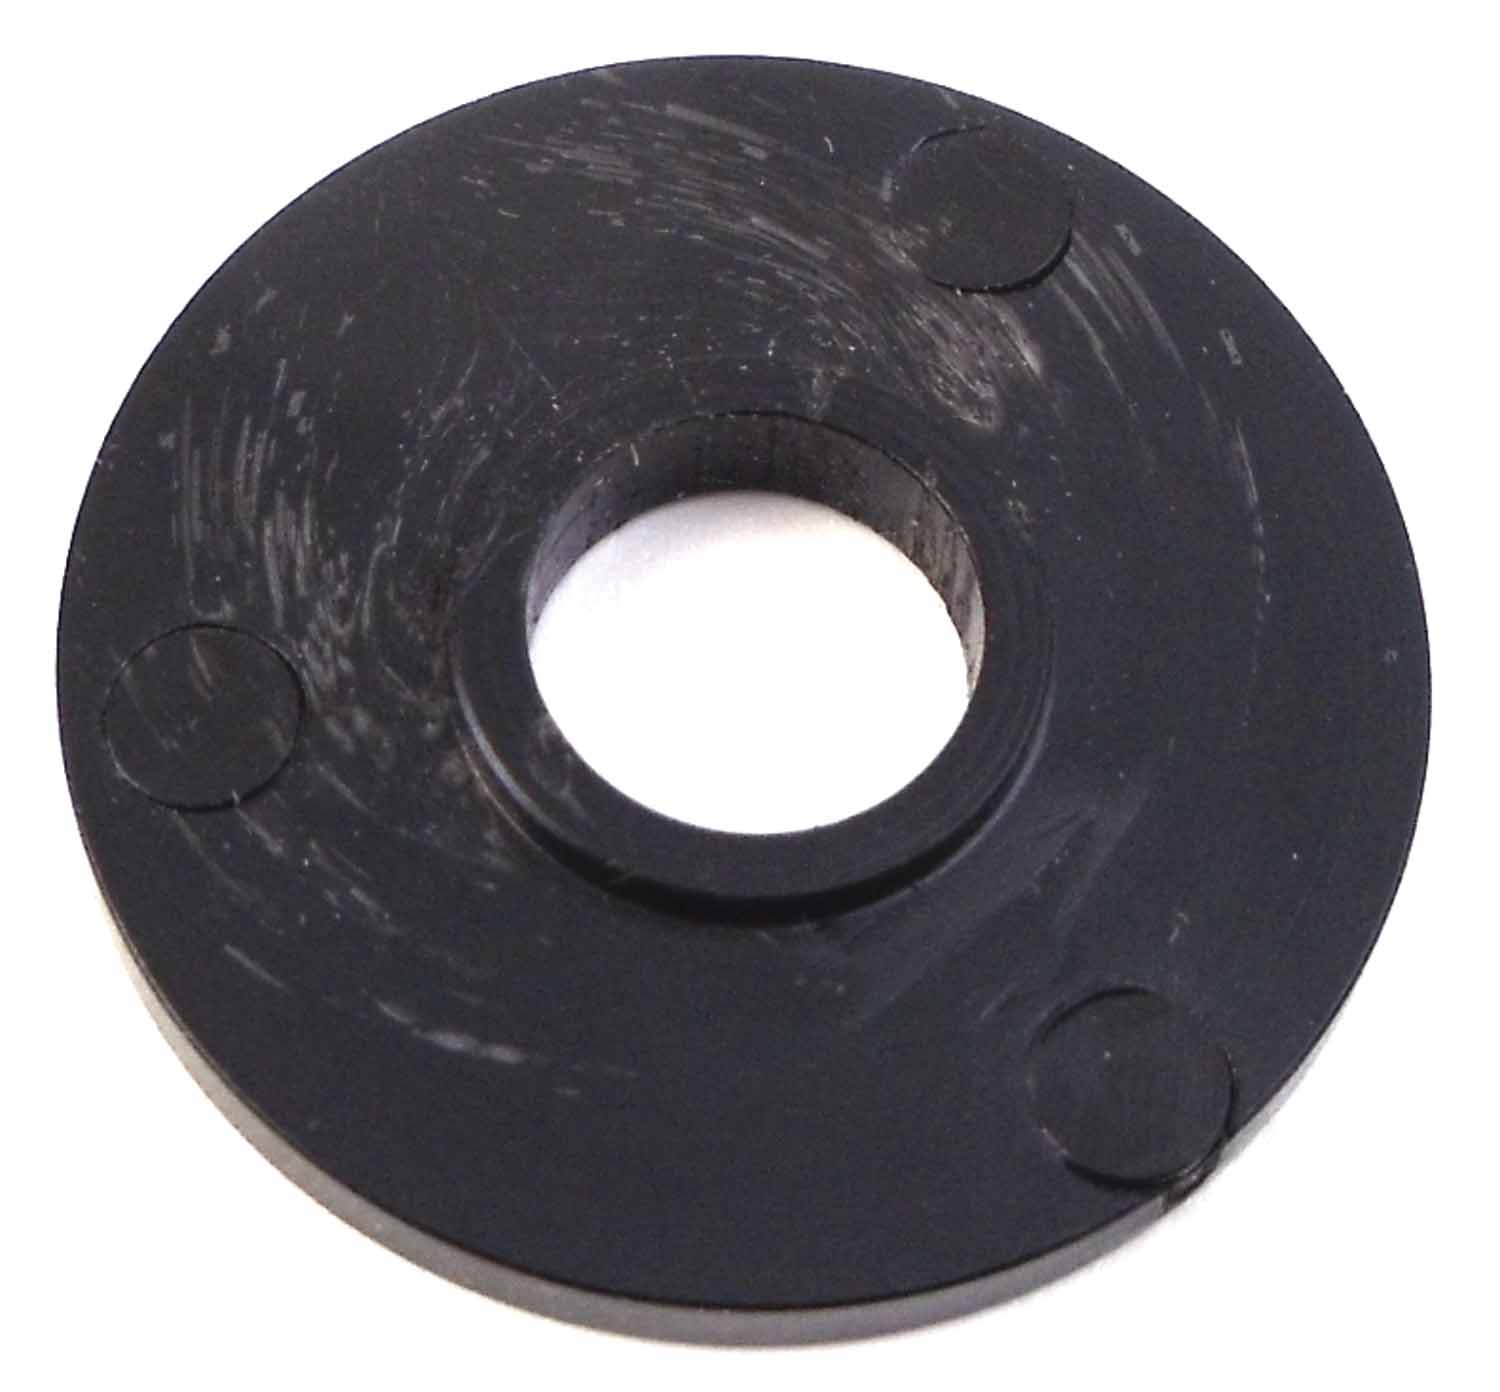 Large Black Plastic Washer W/ 1/2" Center Hole